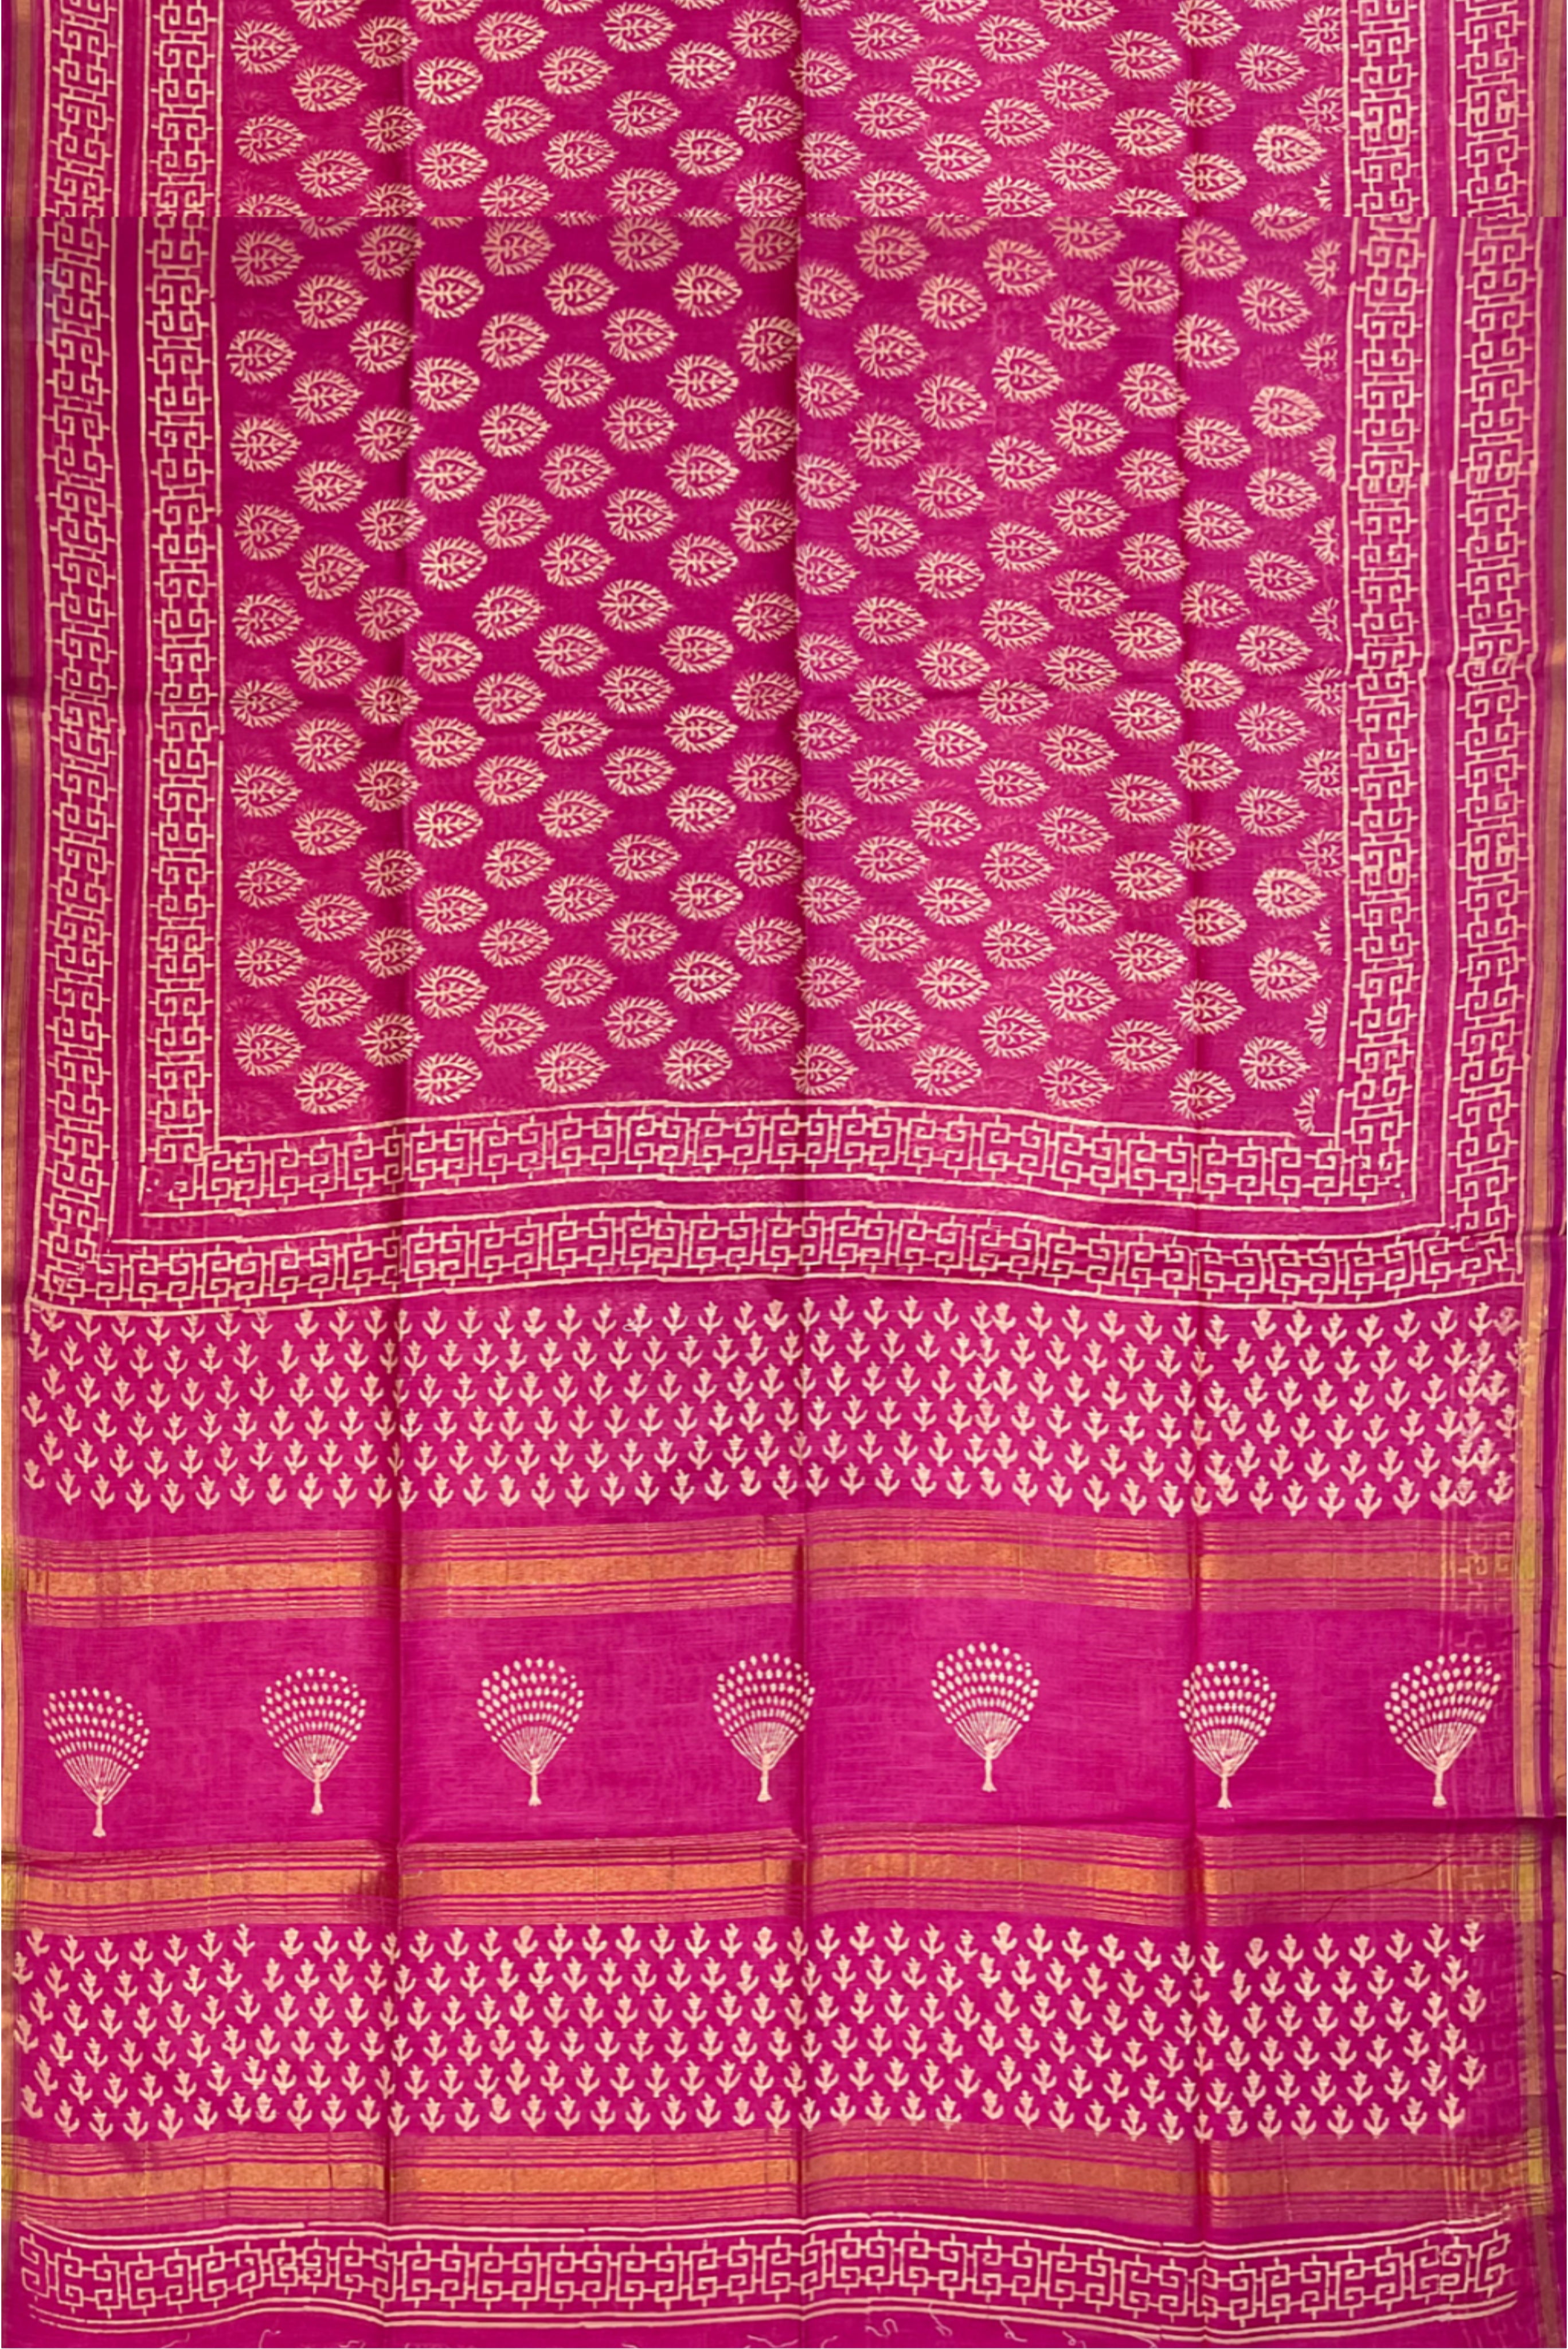 Pink Chanderi Silk Cotton Saree With Ajrakh Print Pattern